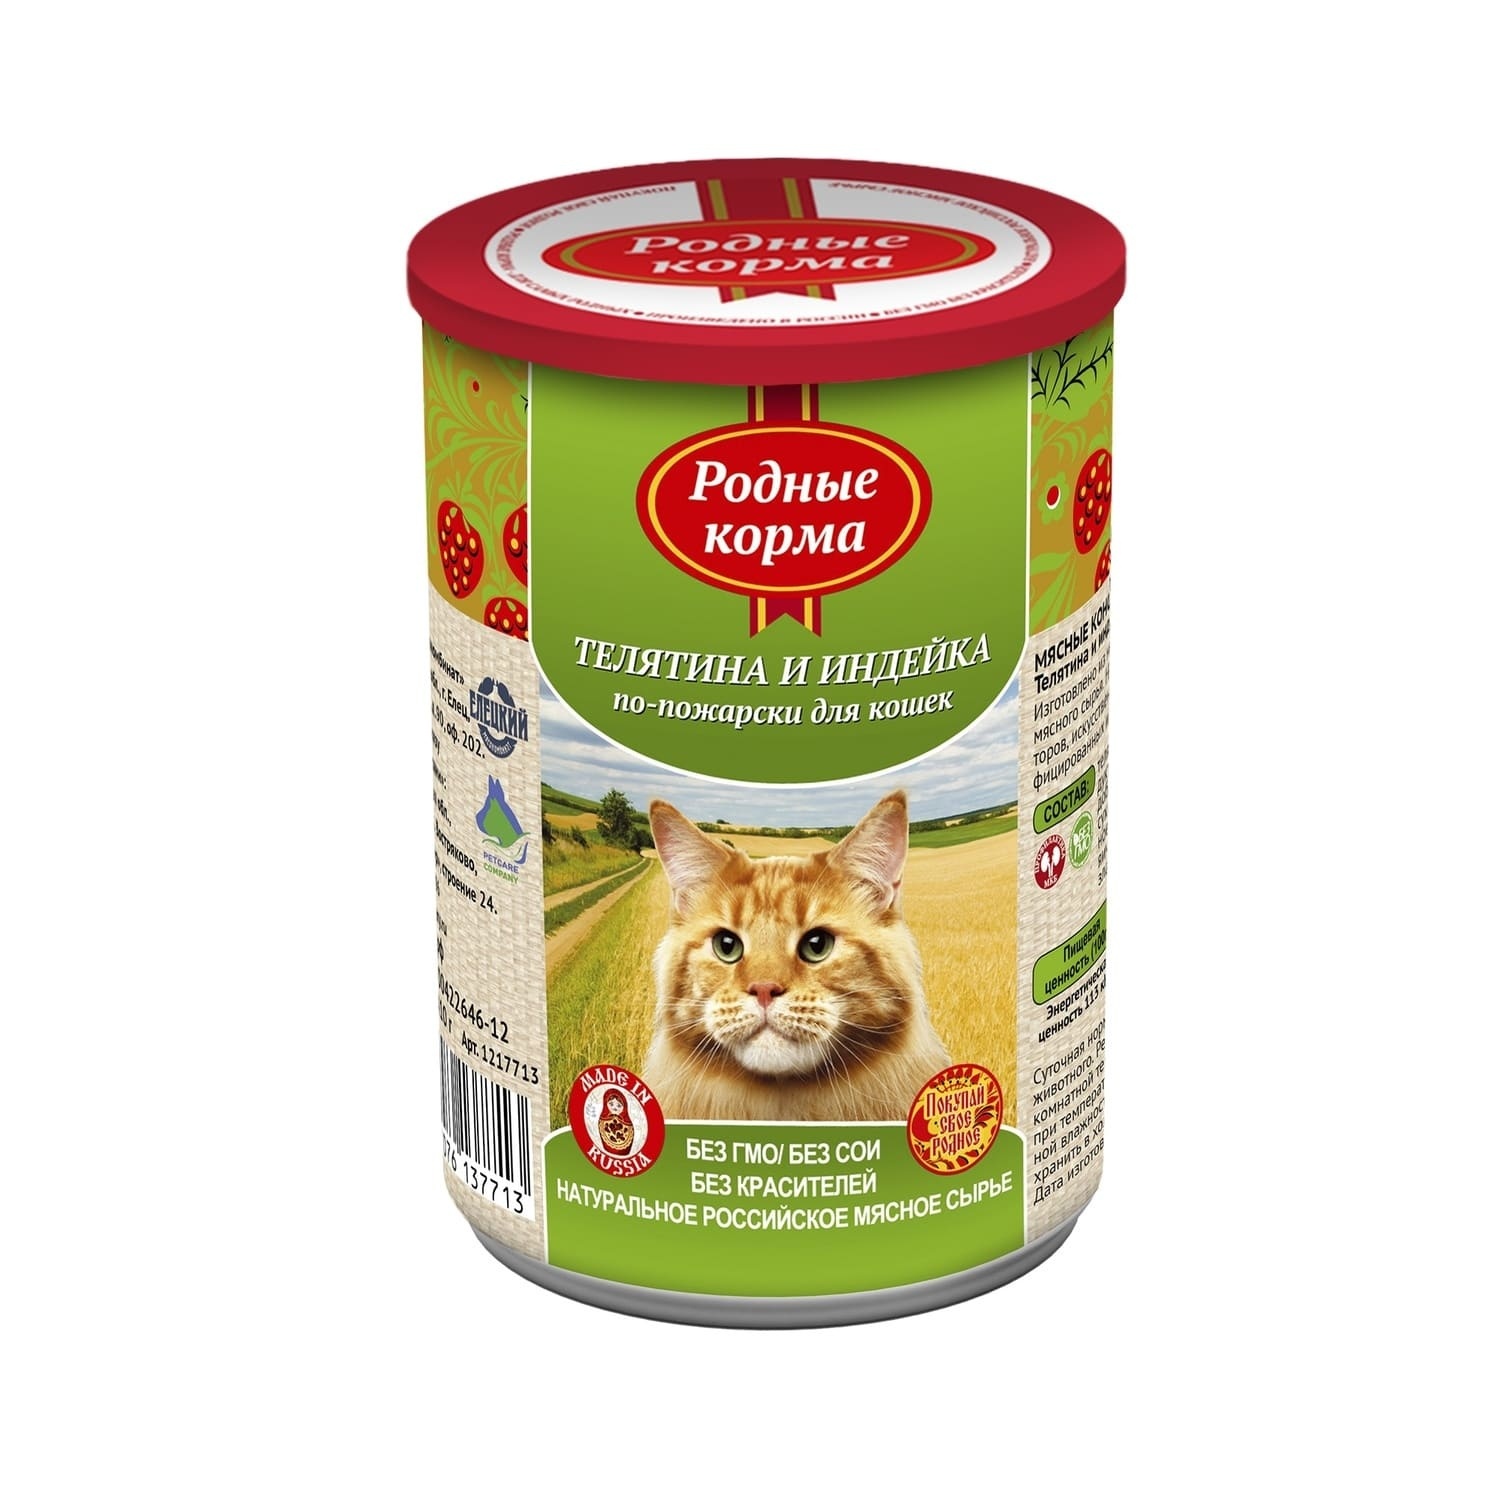 Родные корма Родные корма консервы для кошек, телятина и индейка по-пожарски (410 г)